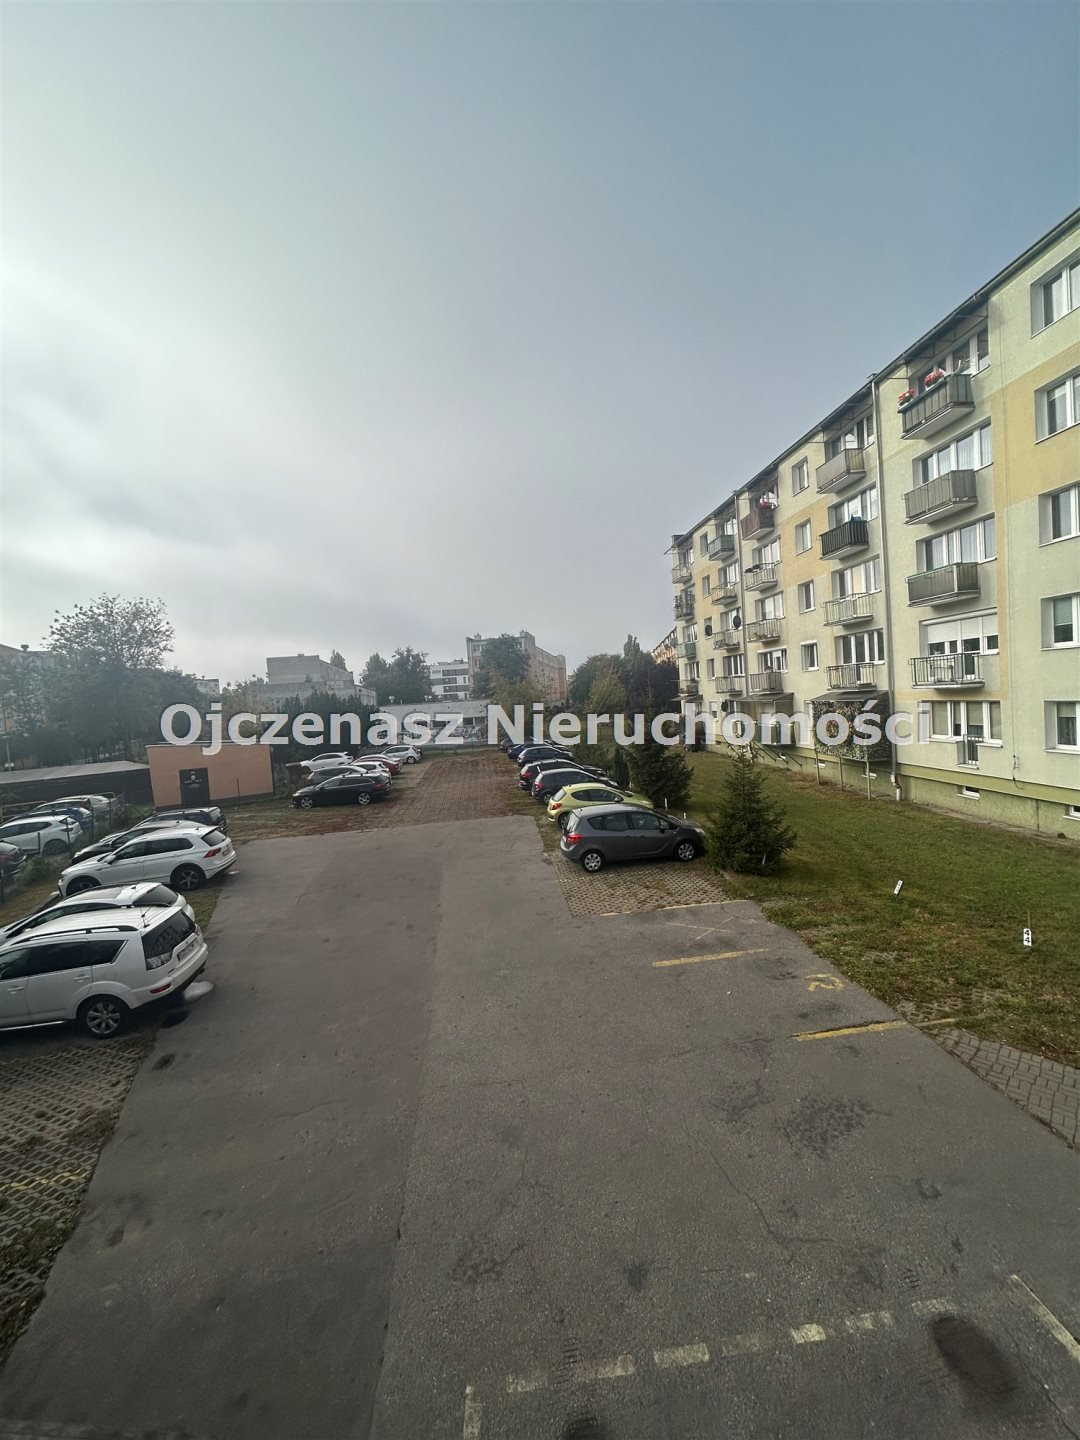 Mieszkanie na wynajem Bydgoszcz, Glinki  125m2 Foto 11